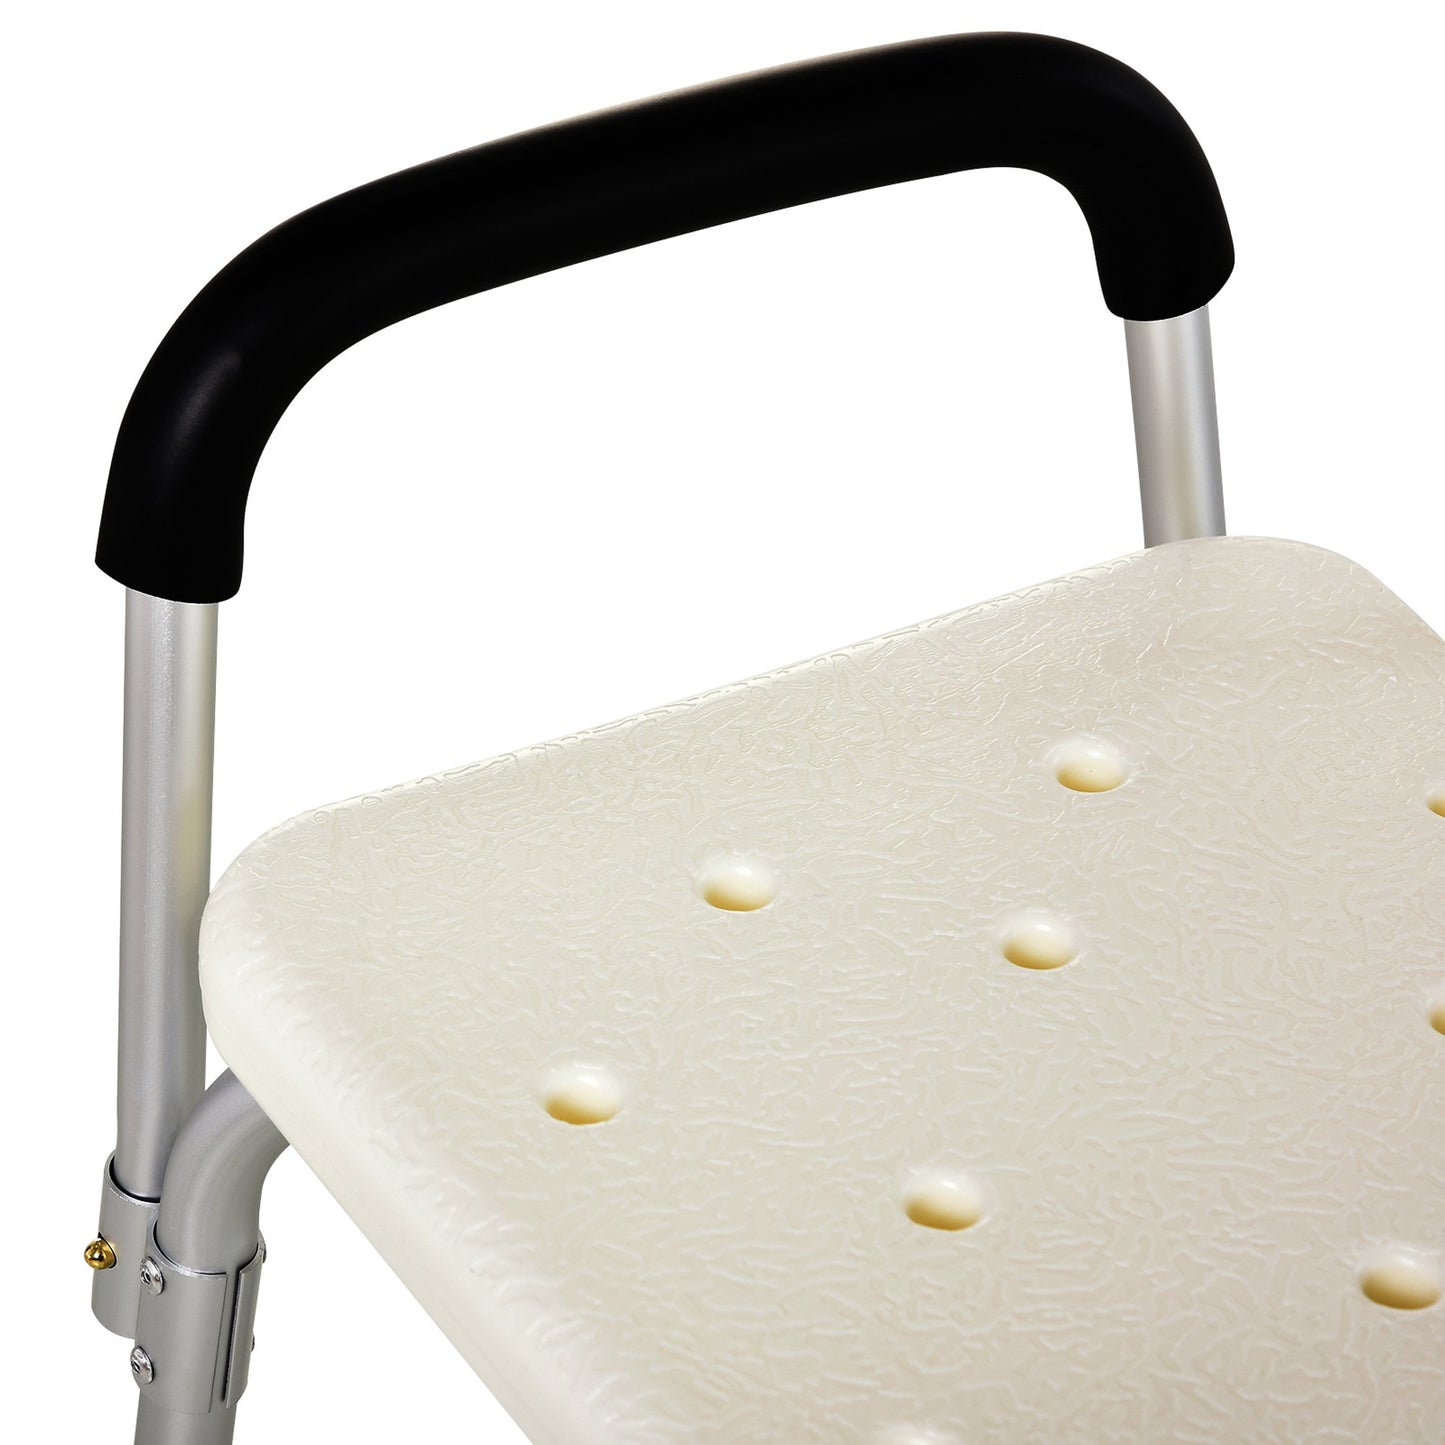 HOMCOM Adjustable Shower Bench with Adjustable Back and Armrest